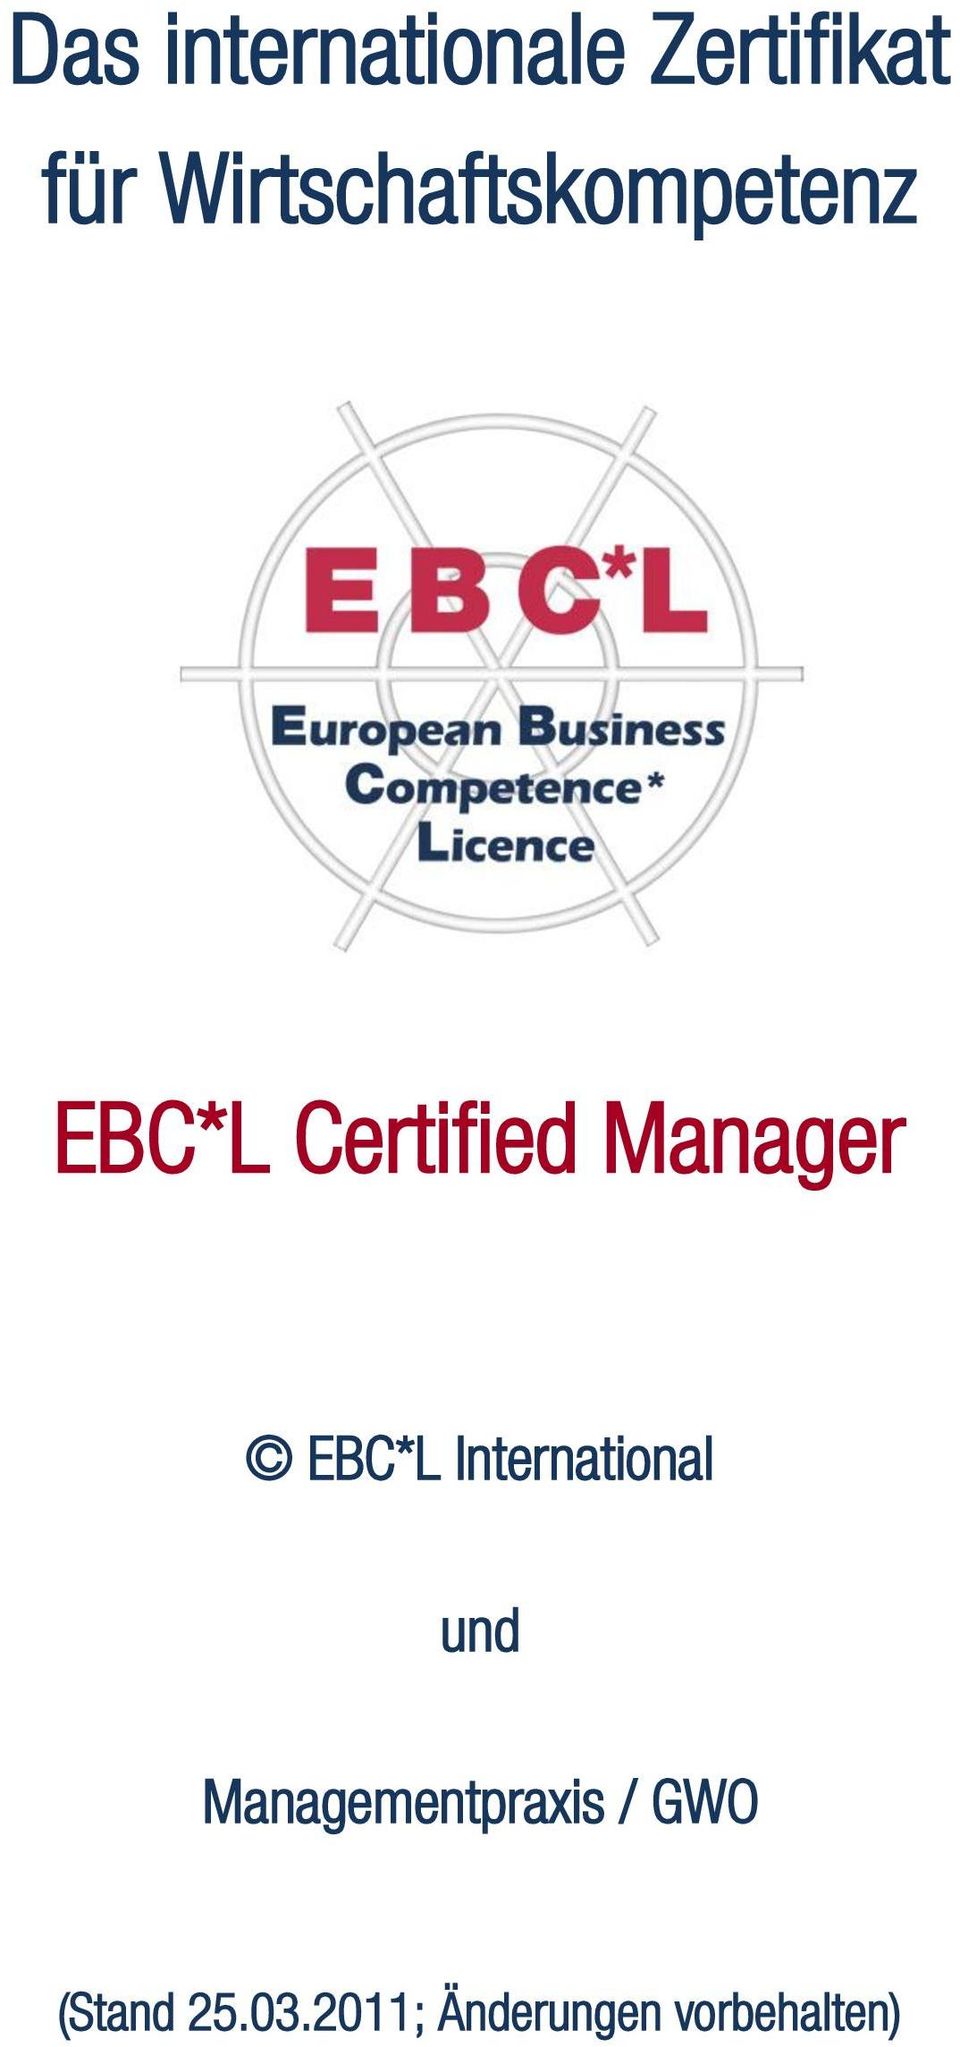 Manager EBC*L International und